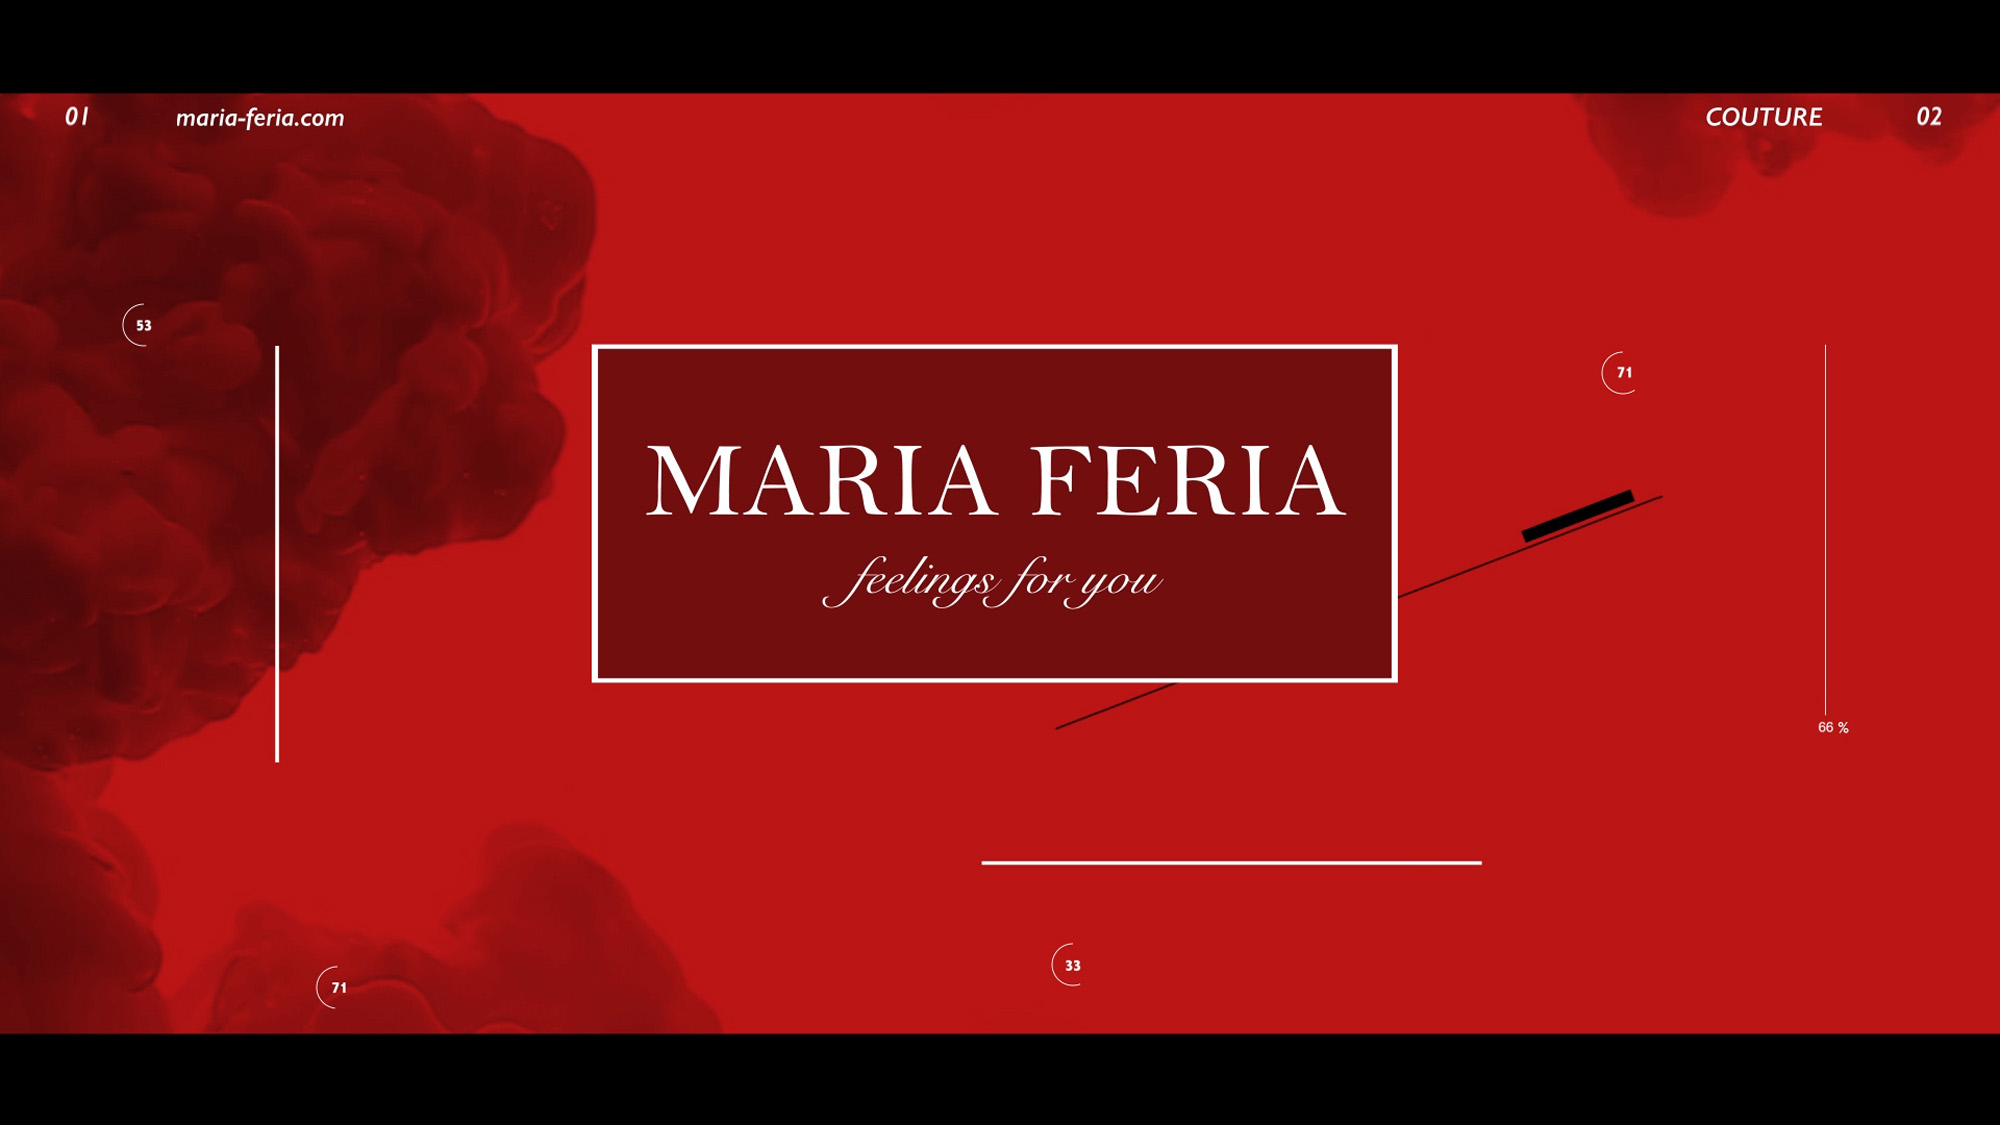 MARIA FERIA ブランド・コンセプトムービー